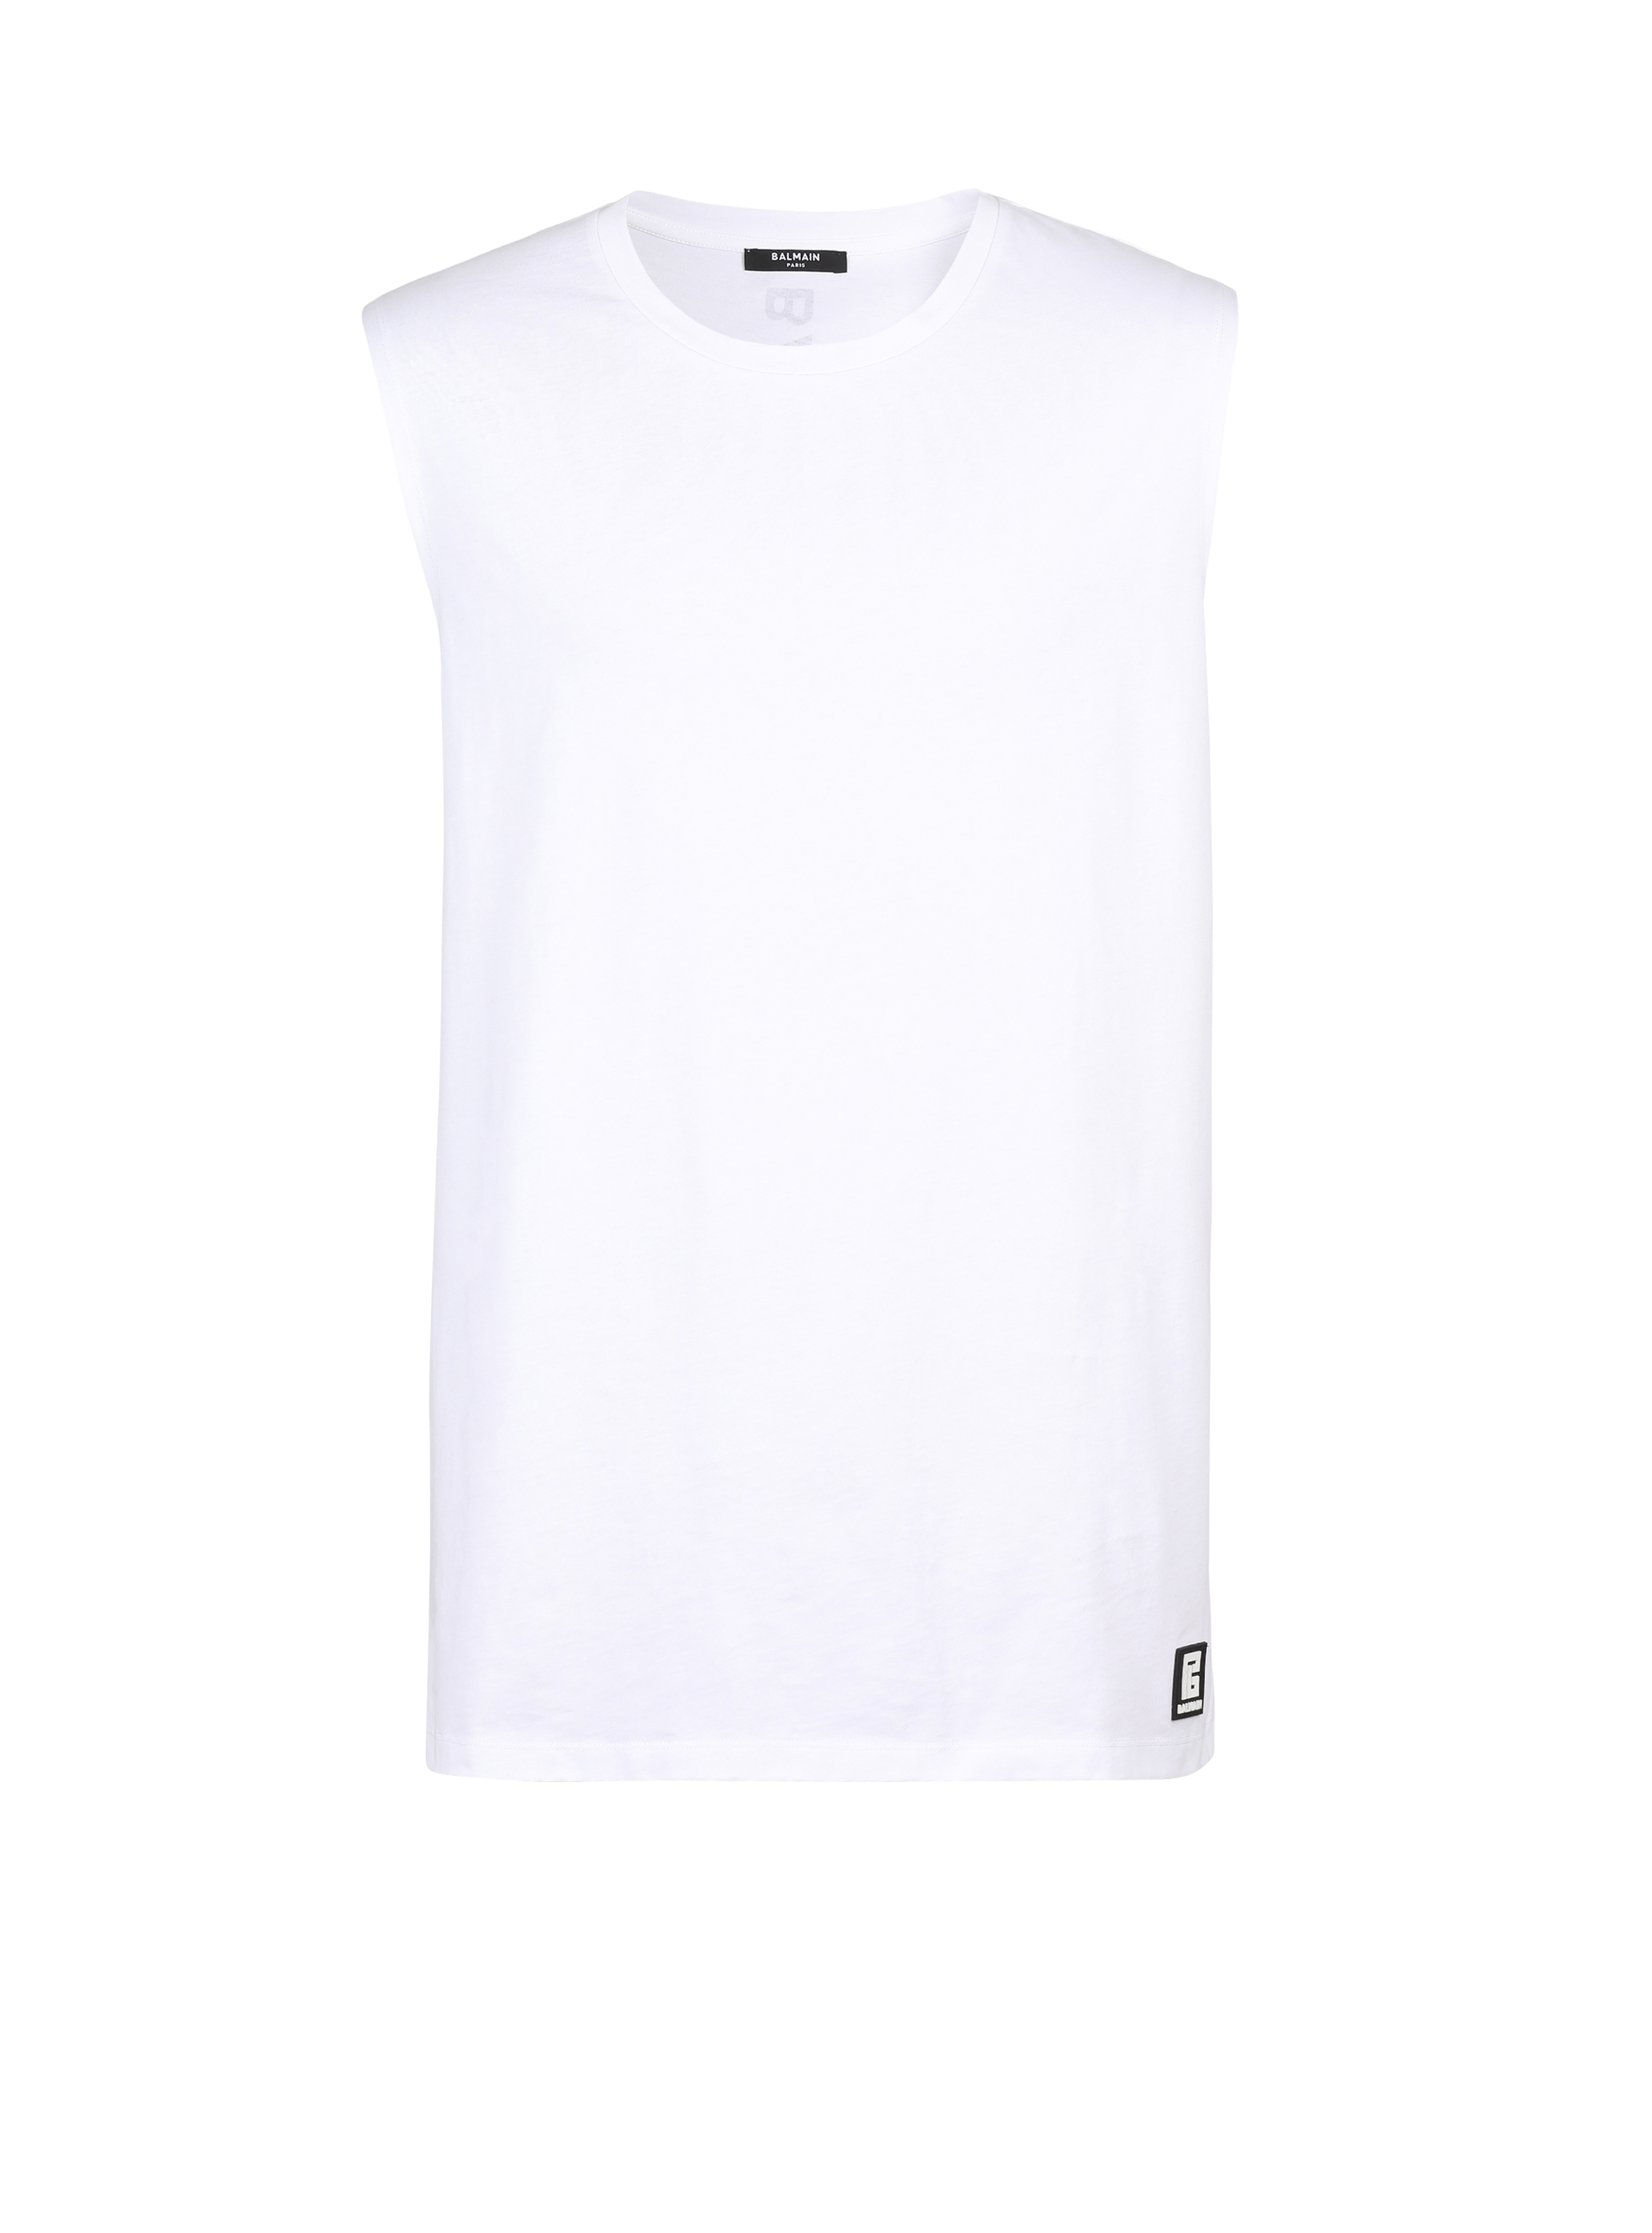 T-shirt en coton imprimé logo Balmain, blanc